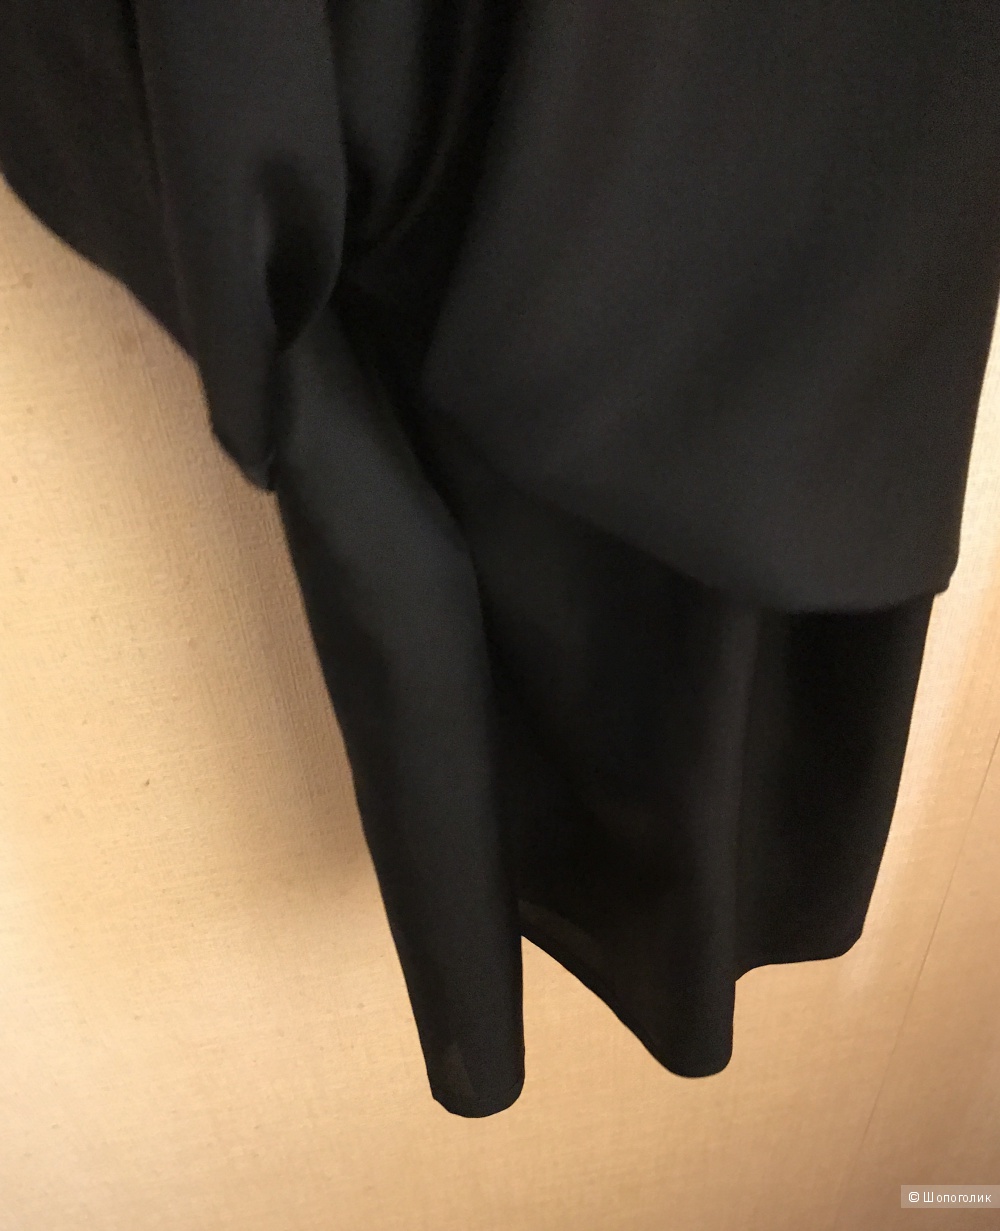 Платье вечернее чёрное Bessini Италия 42-44р